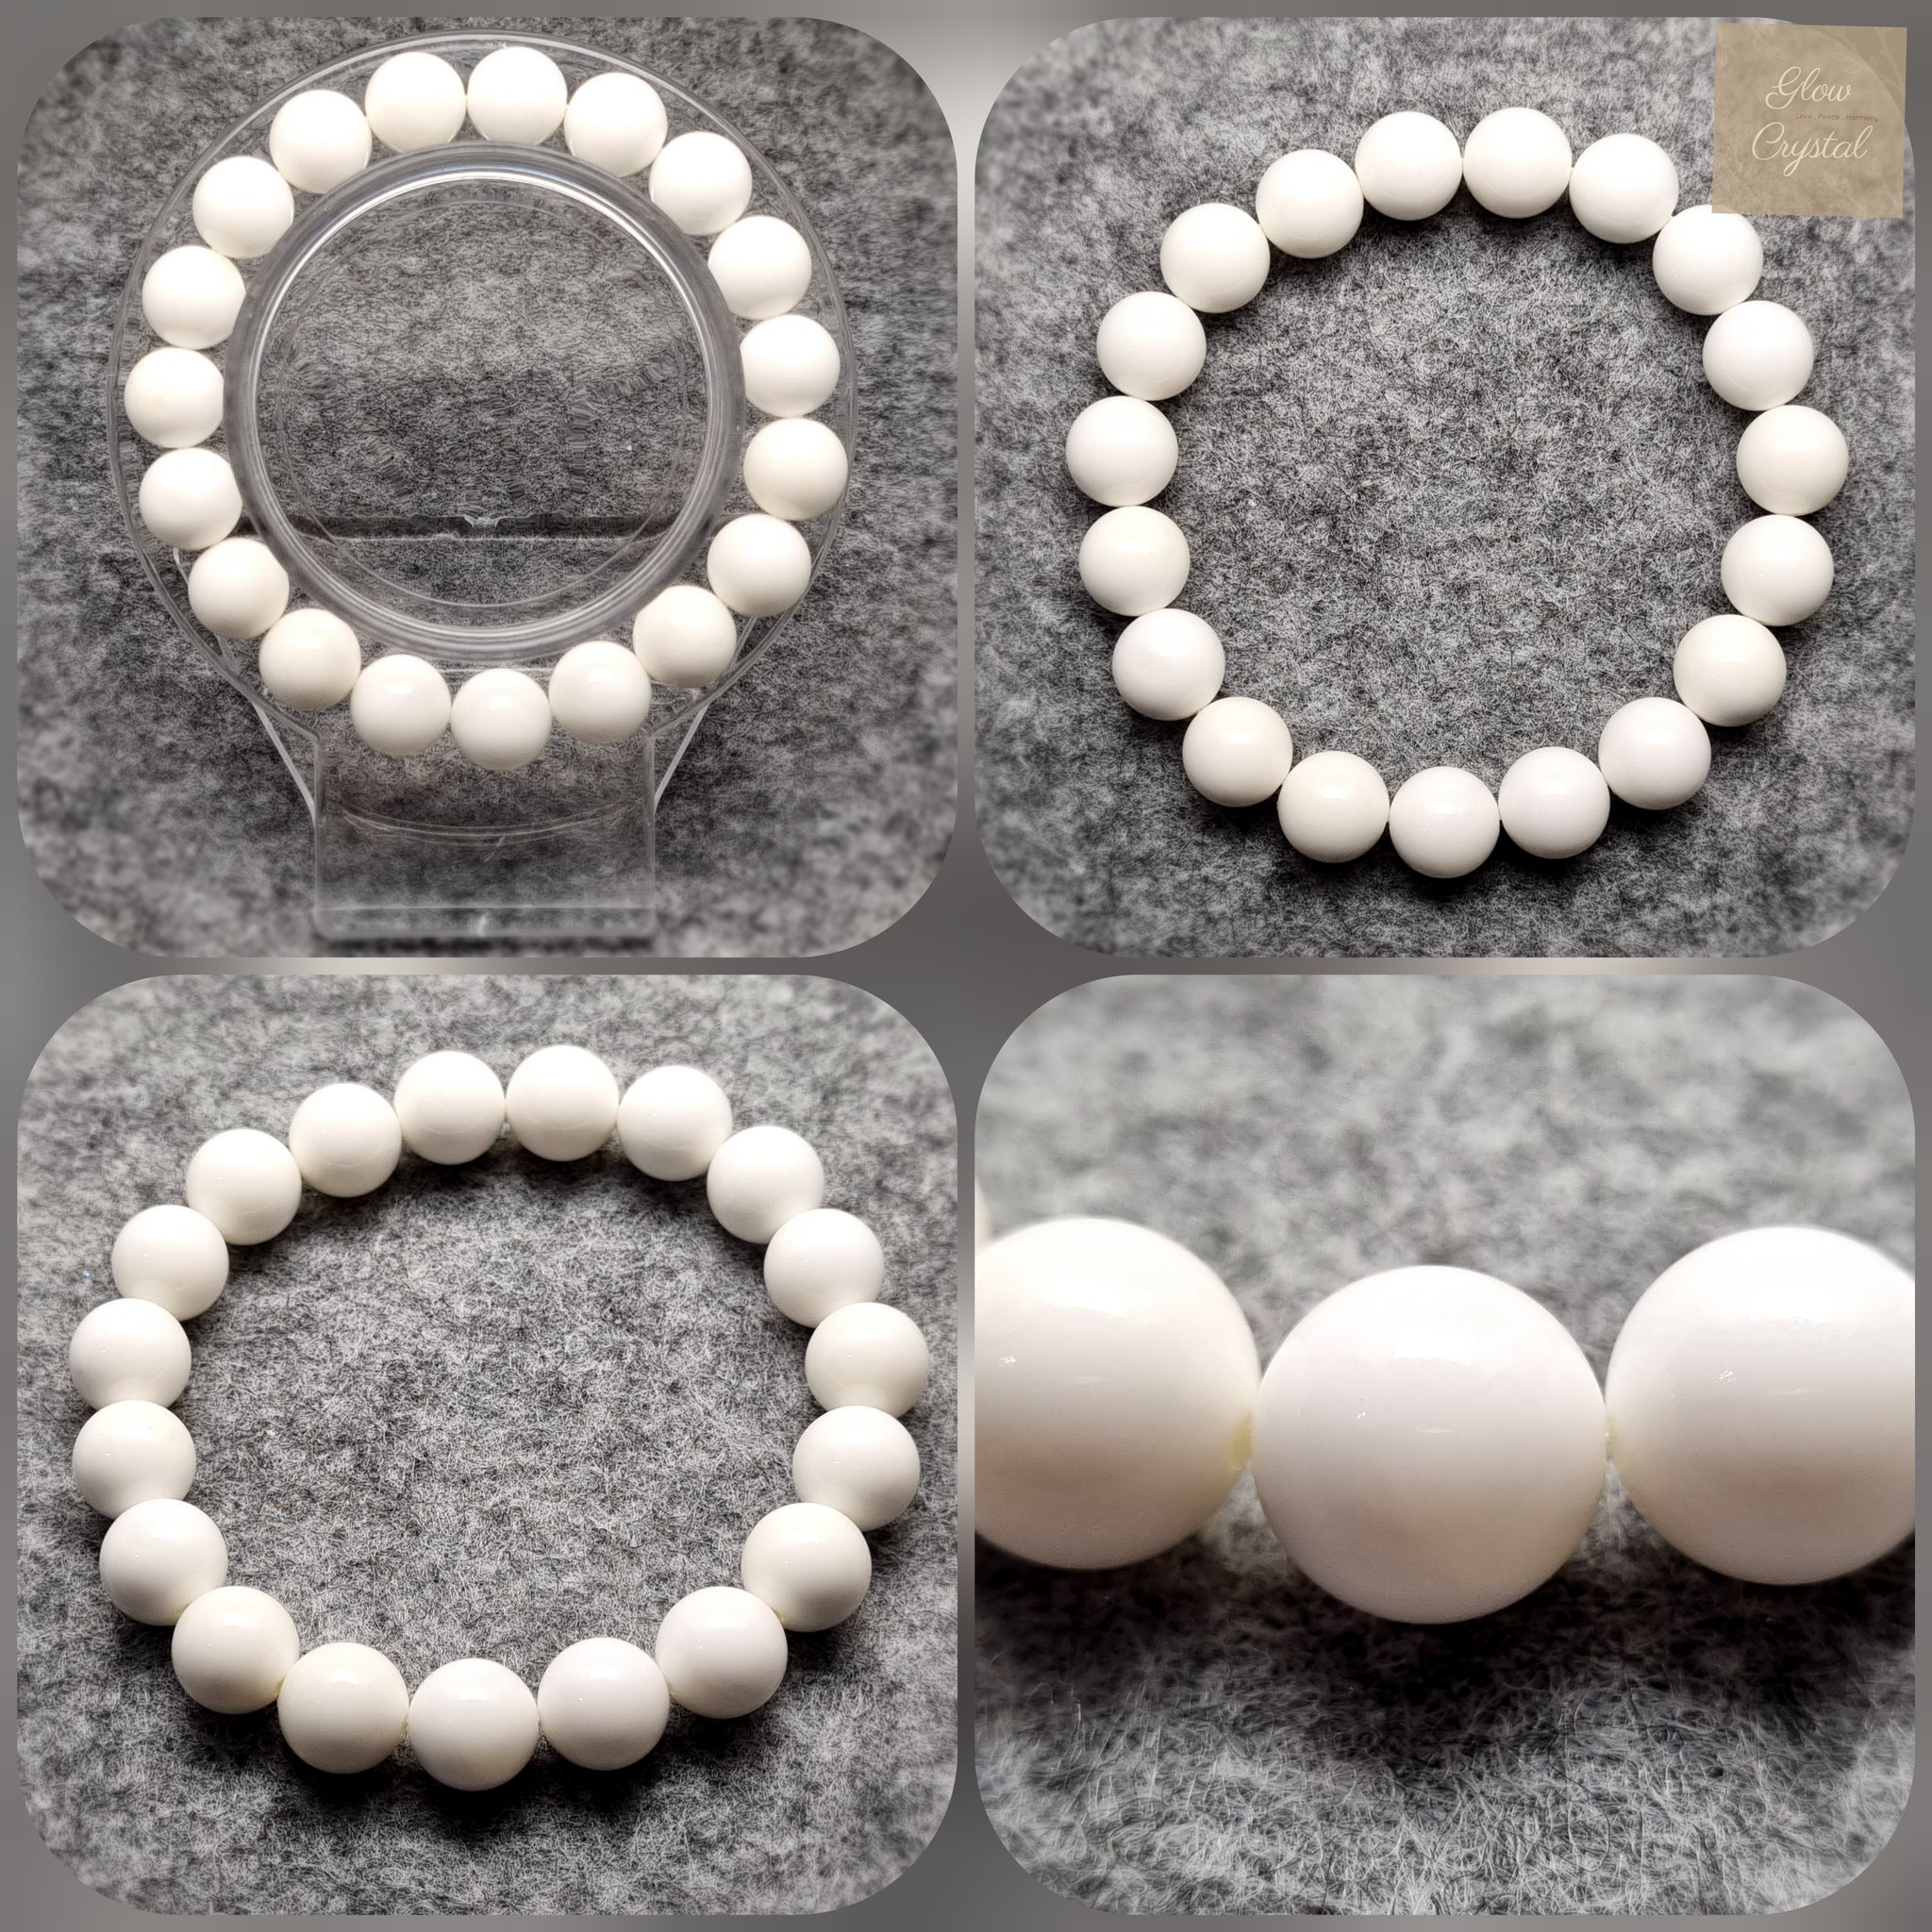 B0708 - White Tridacna Bracelet - 10mm